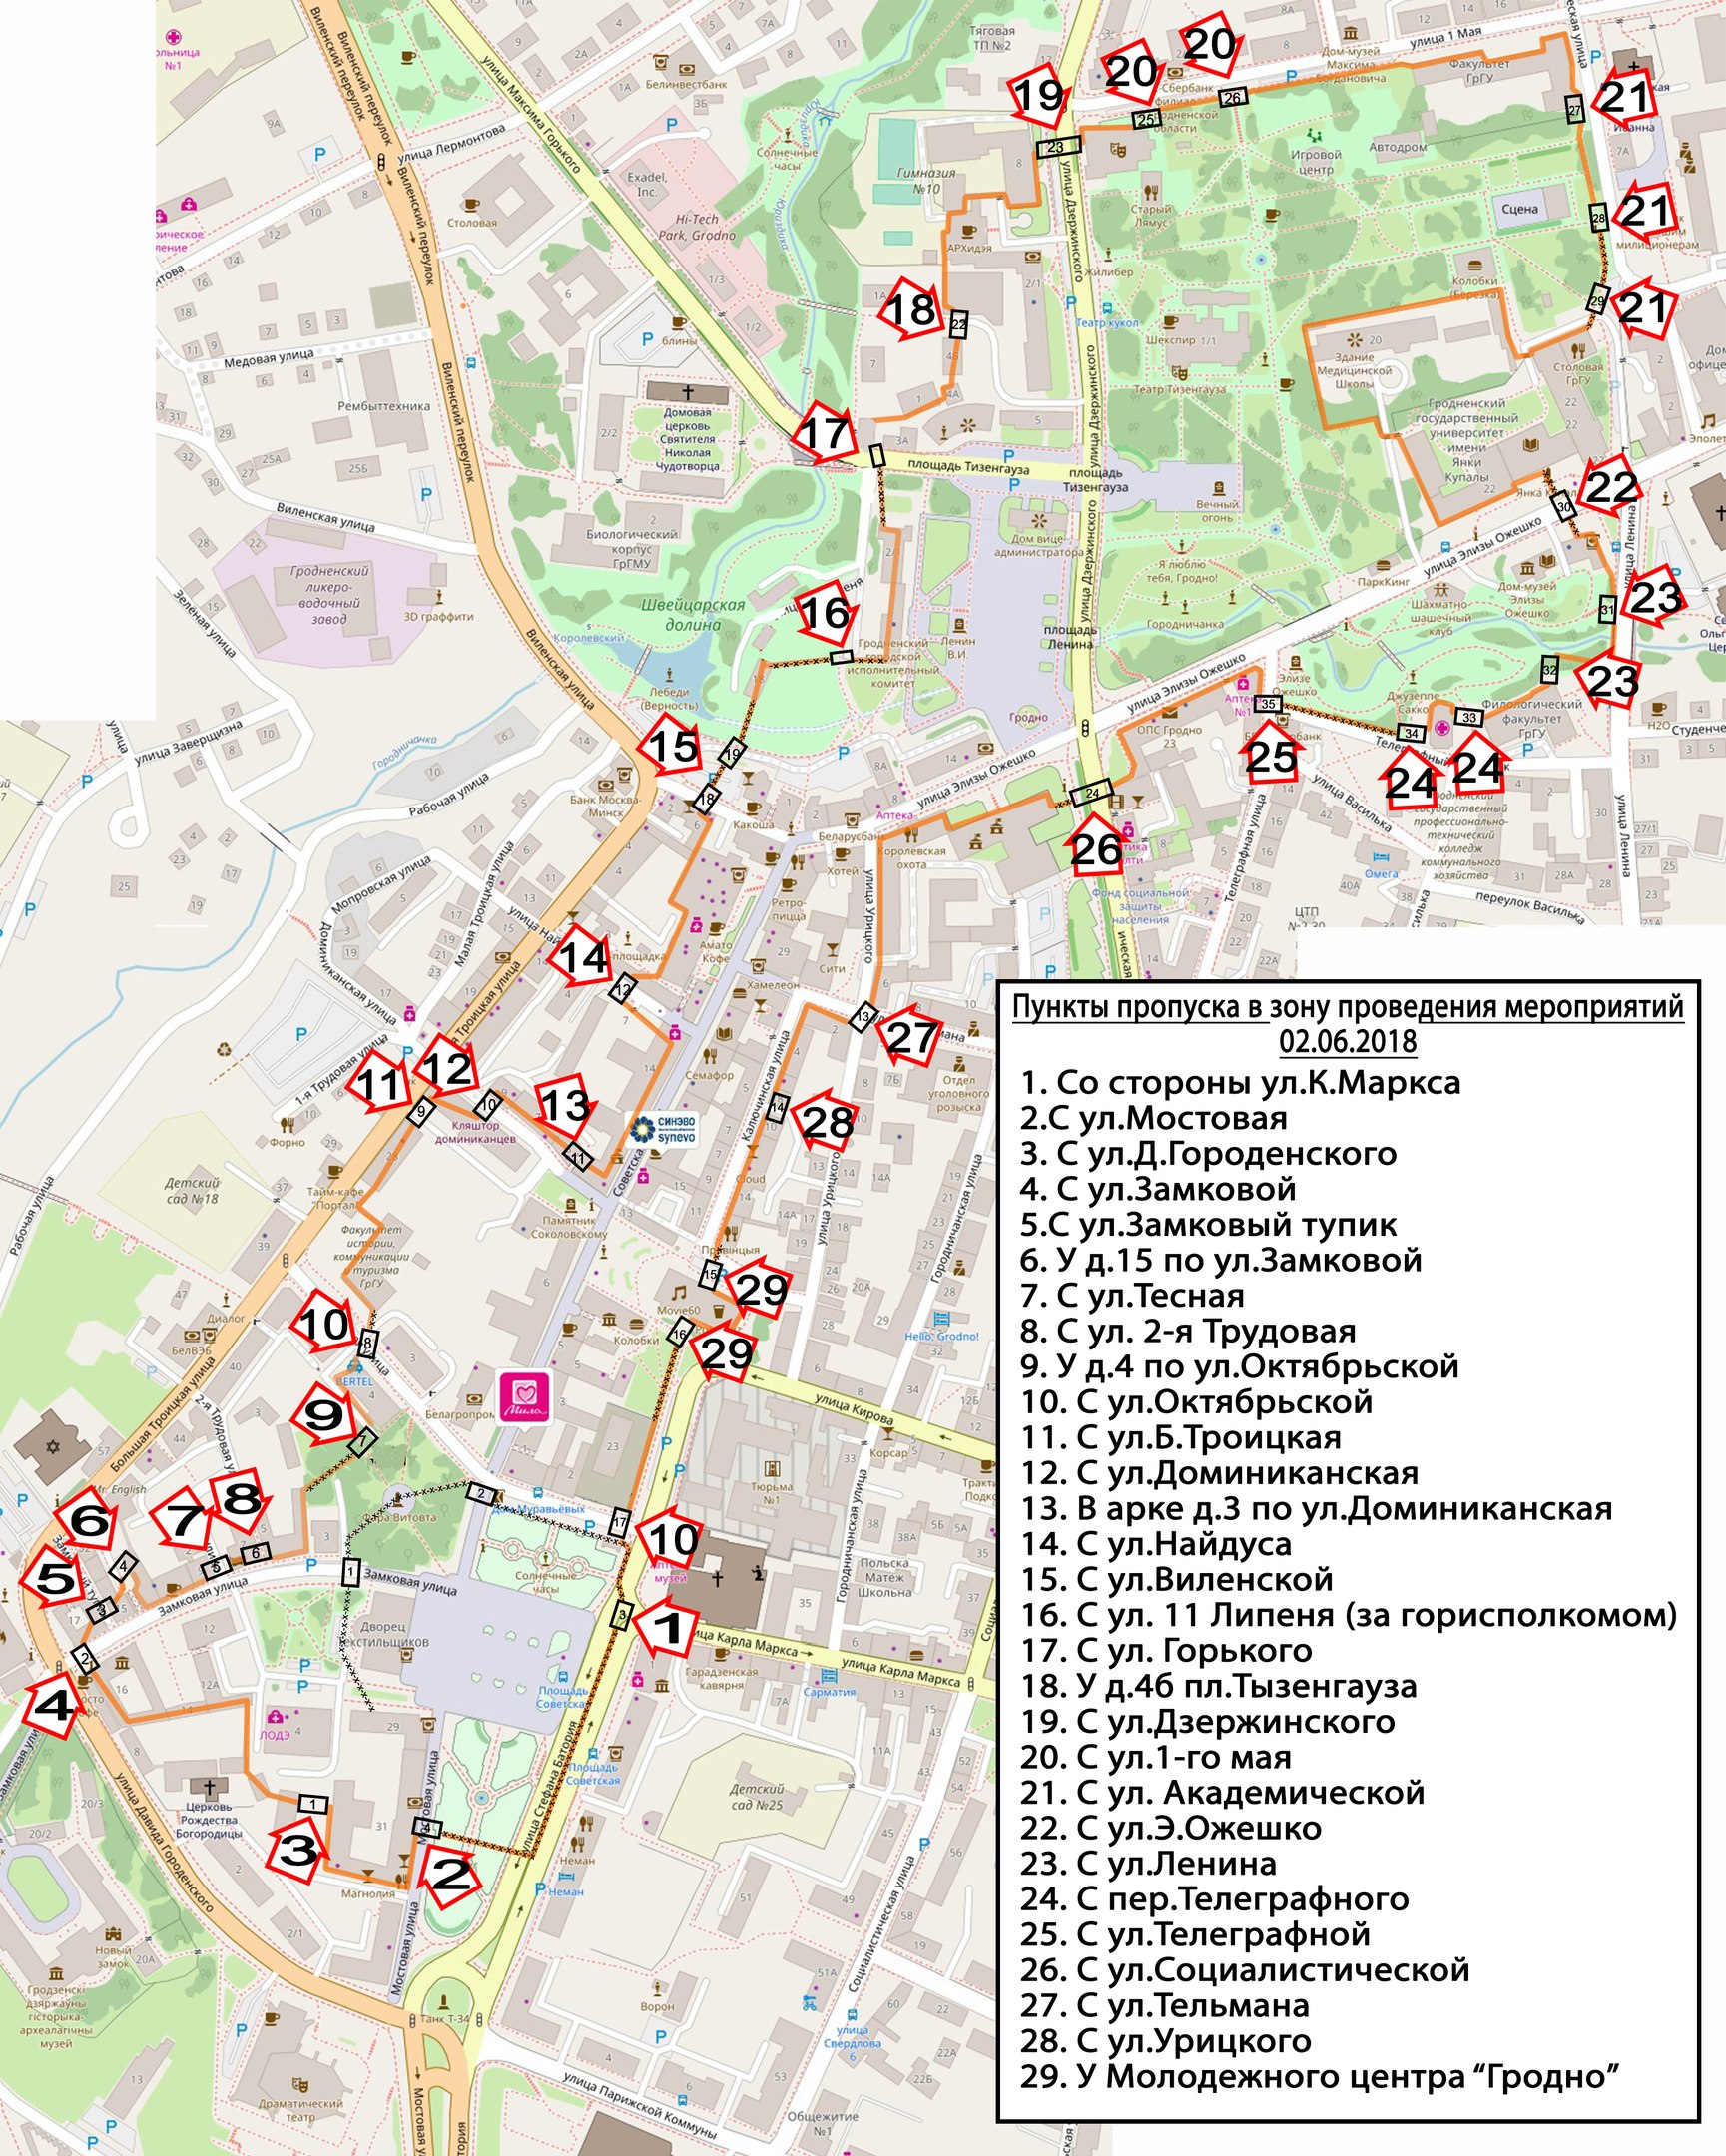 Местоположение гродно. Центр Гродно на карте. Туристическая карта Гродно. Карта центр города Гродно. Гродно туристическая карта города.